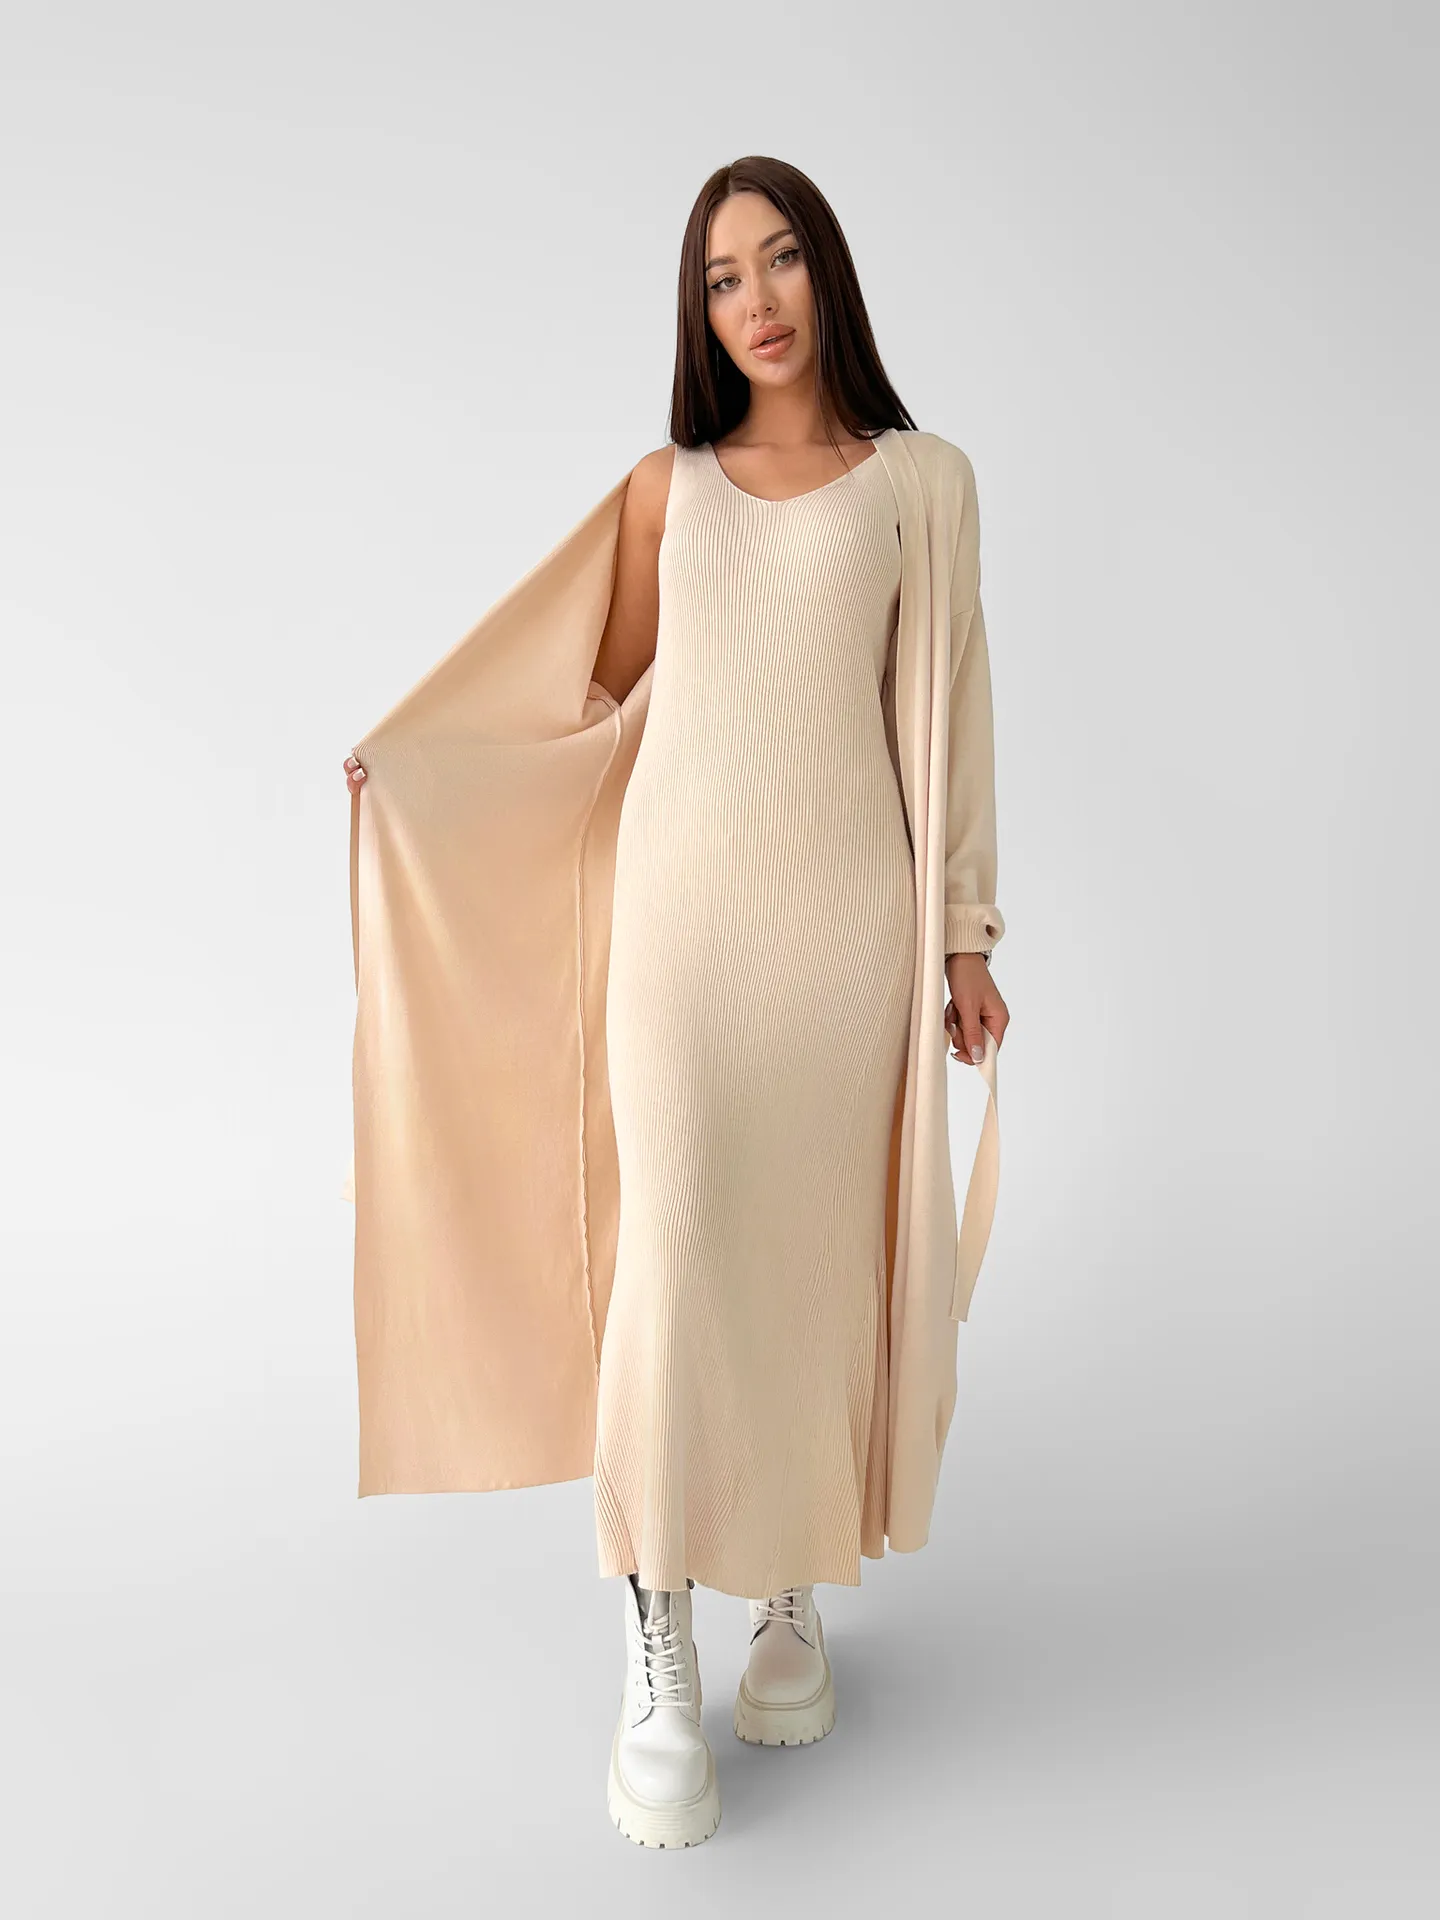 Комплект JN из удлиненного платья без рукавов и кардигана с поясом